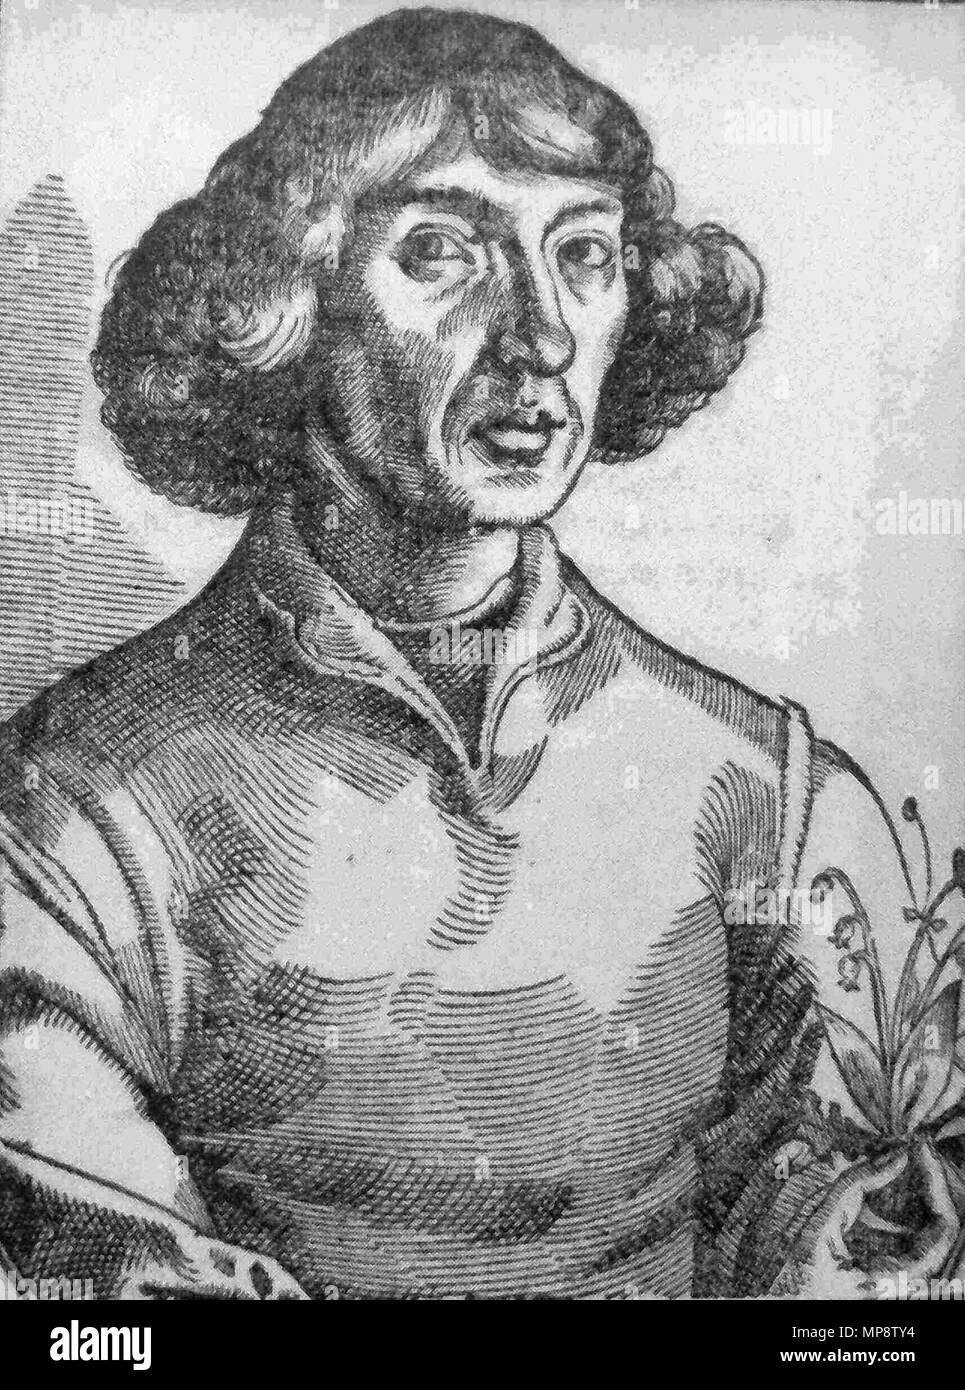 . English: Kopernikus-Portrait aus dem Holzschnitt in Nicolaus Reusners († 1602) "Icones' (1587), der vermutlich von De: Christoph Murer († 1614) nach einem angeblichen Selbstportrait von Kopernikus gefertigt wurde. Dieses Porträt wurde zur Vorlage einer Reihe - Holzschnitt, Kupferstich- und Gemälde-Portraits von Kopernikus. . 1587. 773 Kopernikus, Nikolaus - Reusner 1578 Portrait Stockfoto